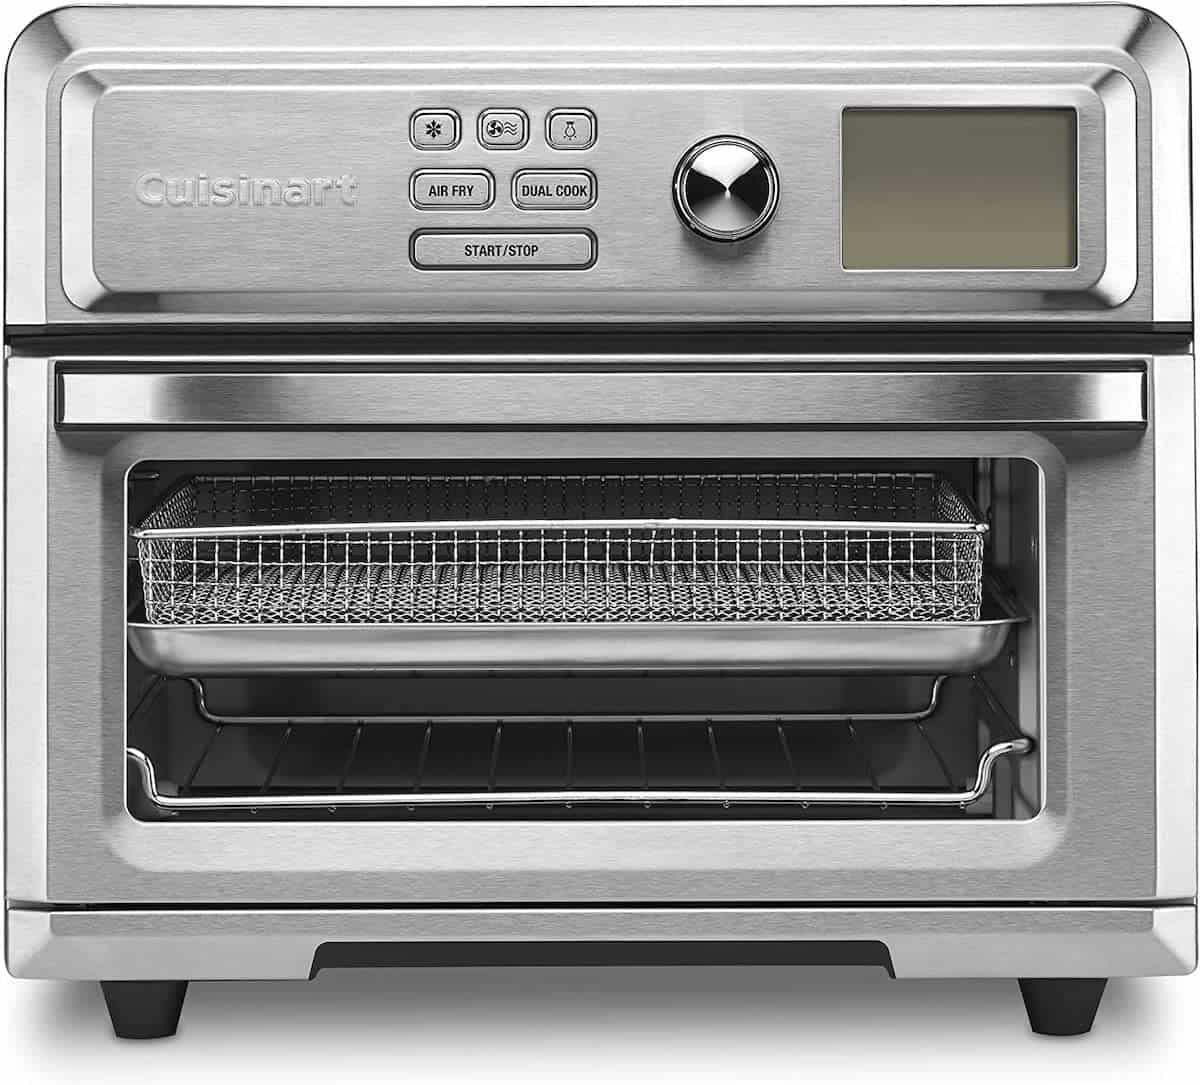 A Cuisinart digital air fryer toaster oven.